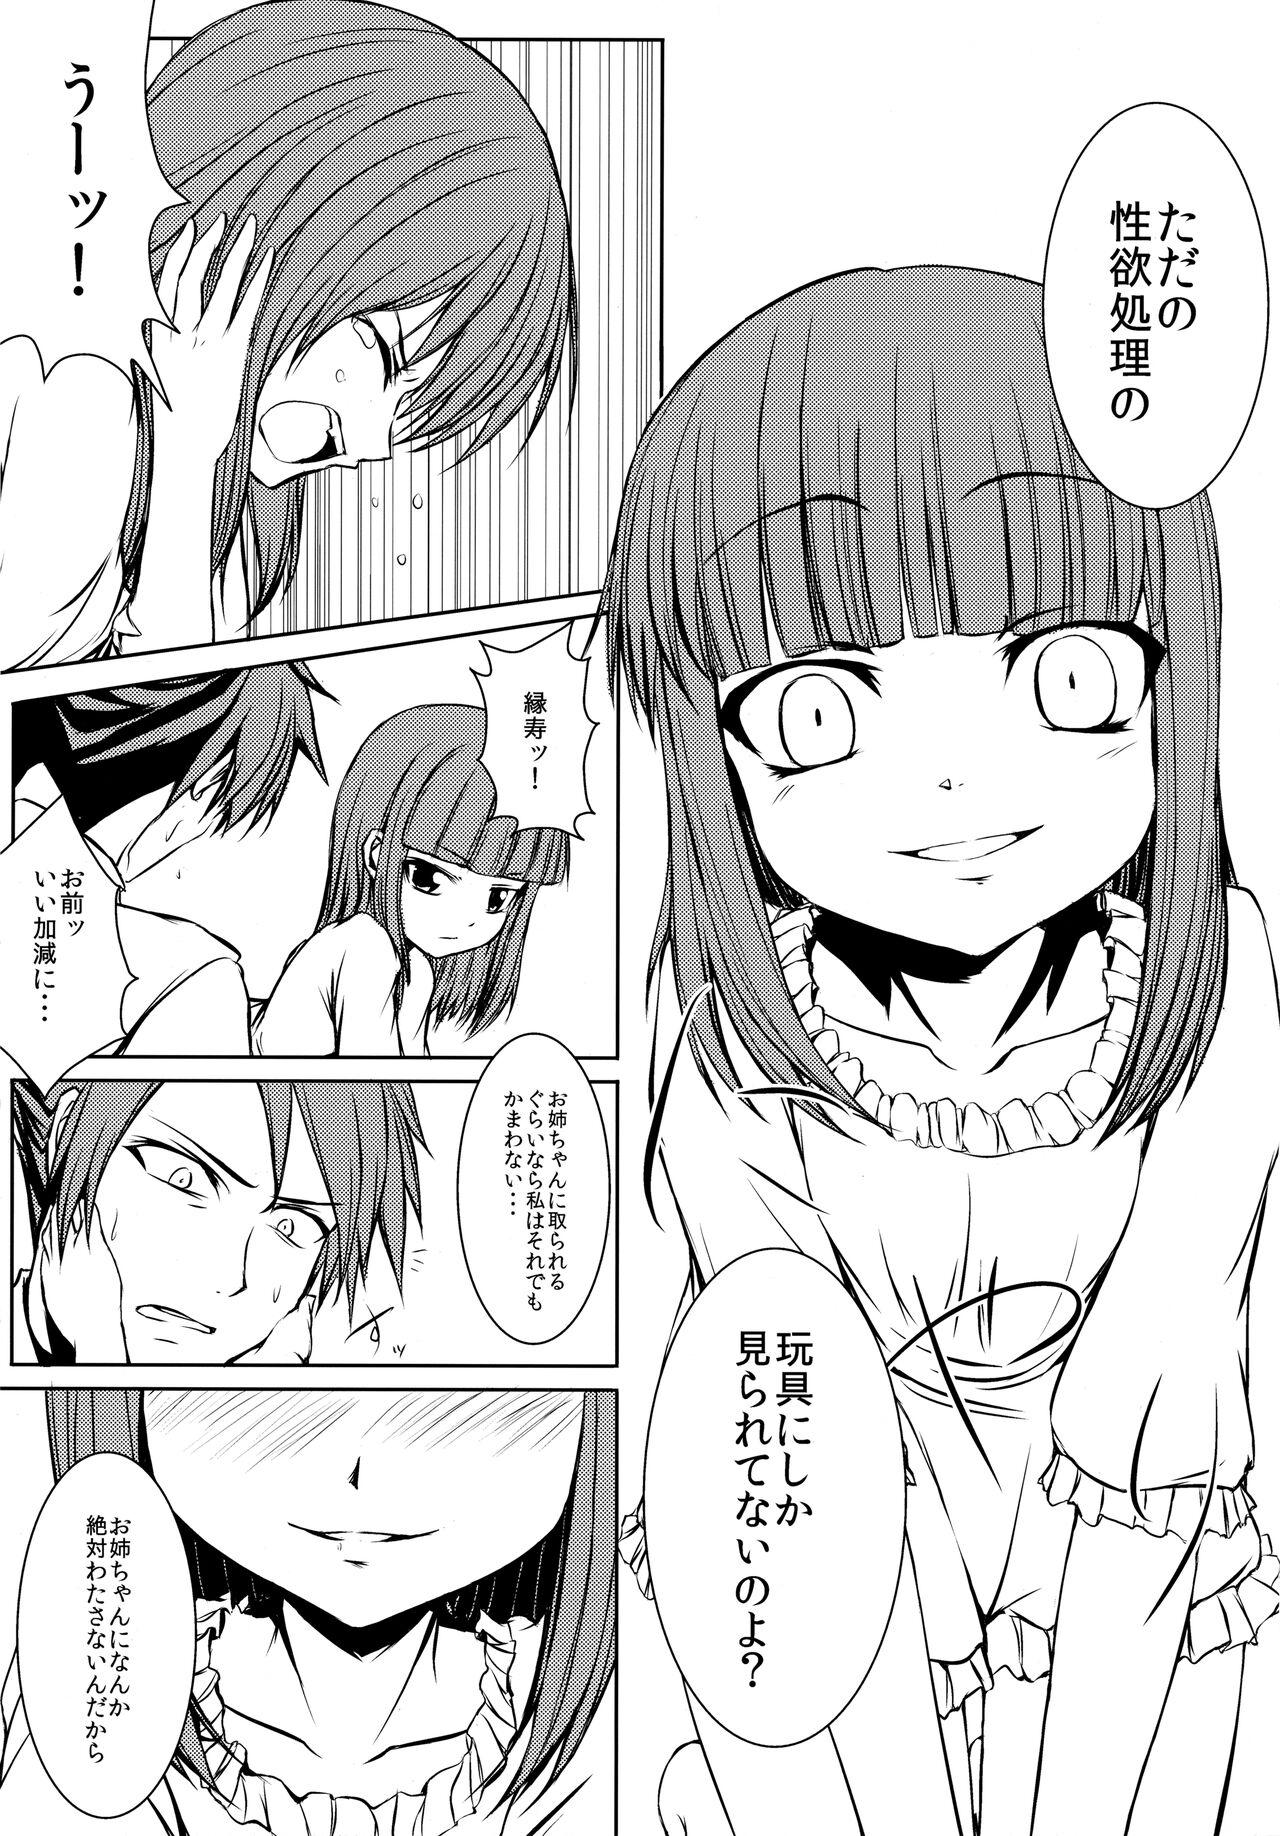 Gays Iedenako 5 - Umineko no naku koro ni | when the seagulls cry Peitos - Page 5